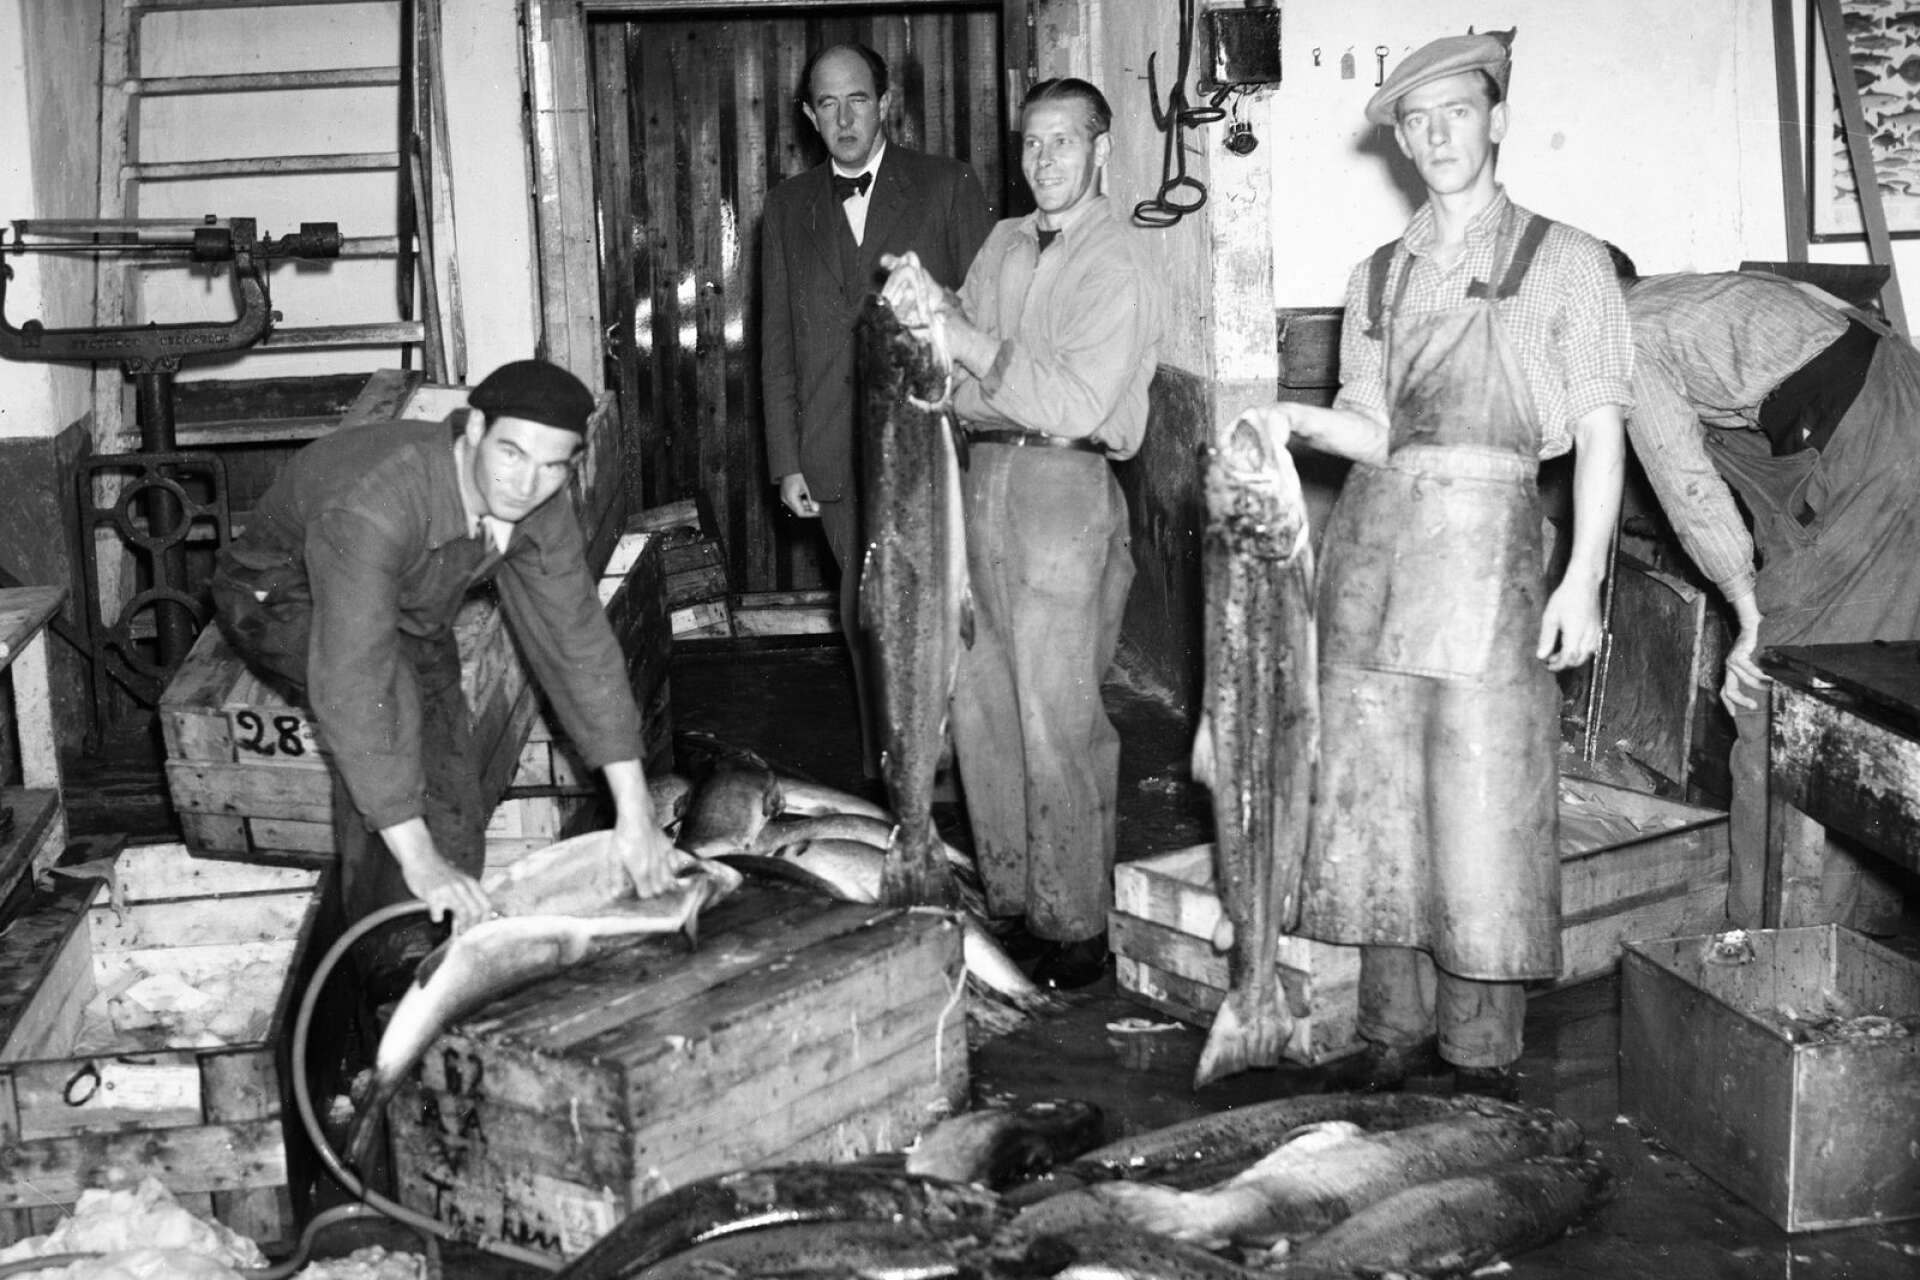 I Matkults databaser finns flera värmländska recept med fisk. Bild från Fiskecentralen 1946.